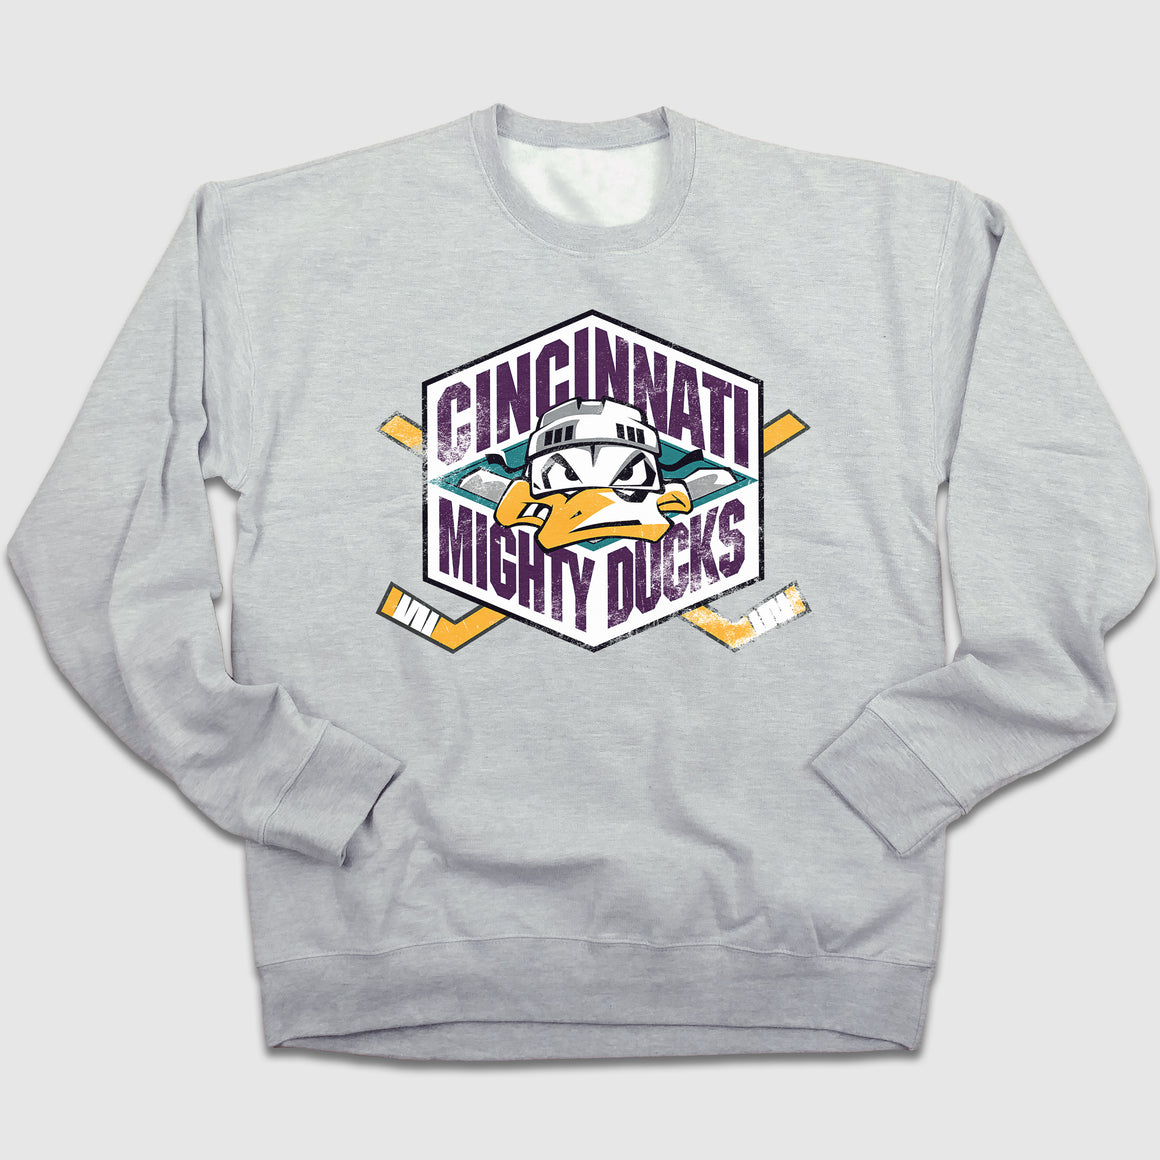 Mighty Ducks Crewneck Sweatshirt - Cincy Shirts